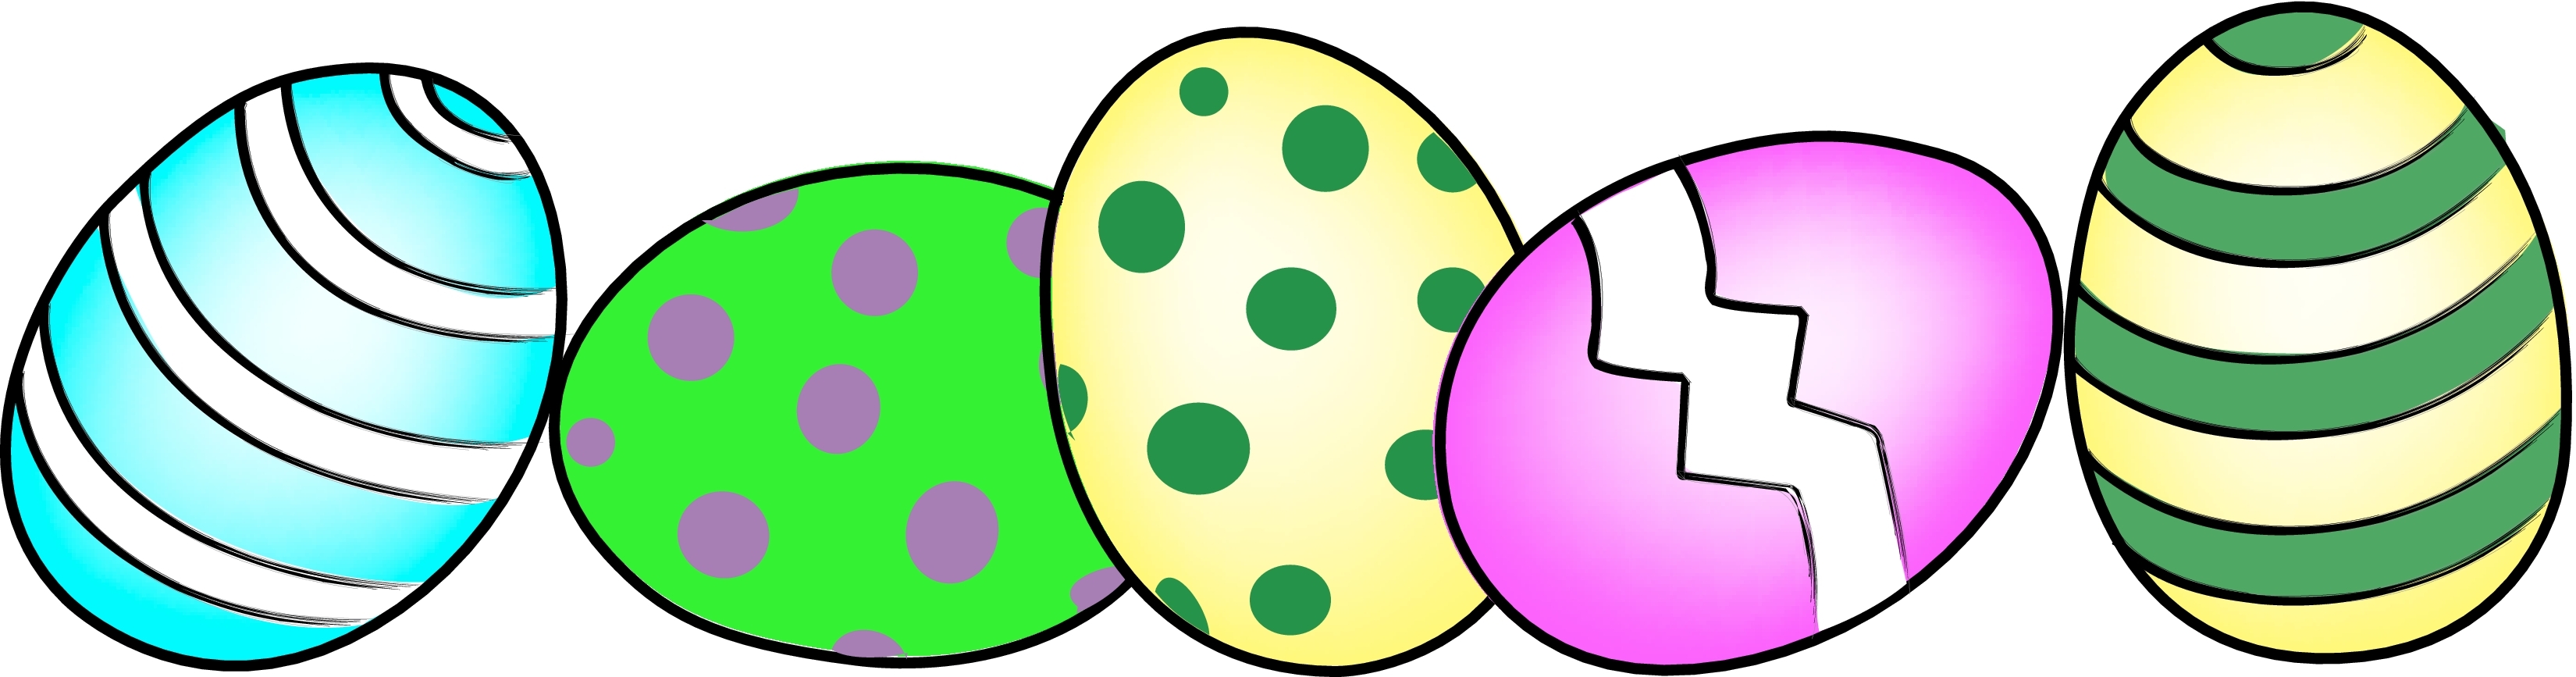 Carton Of Eggs Clipart